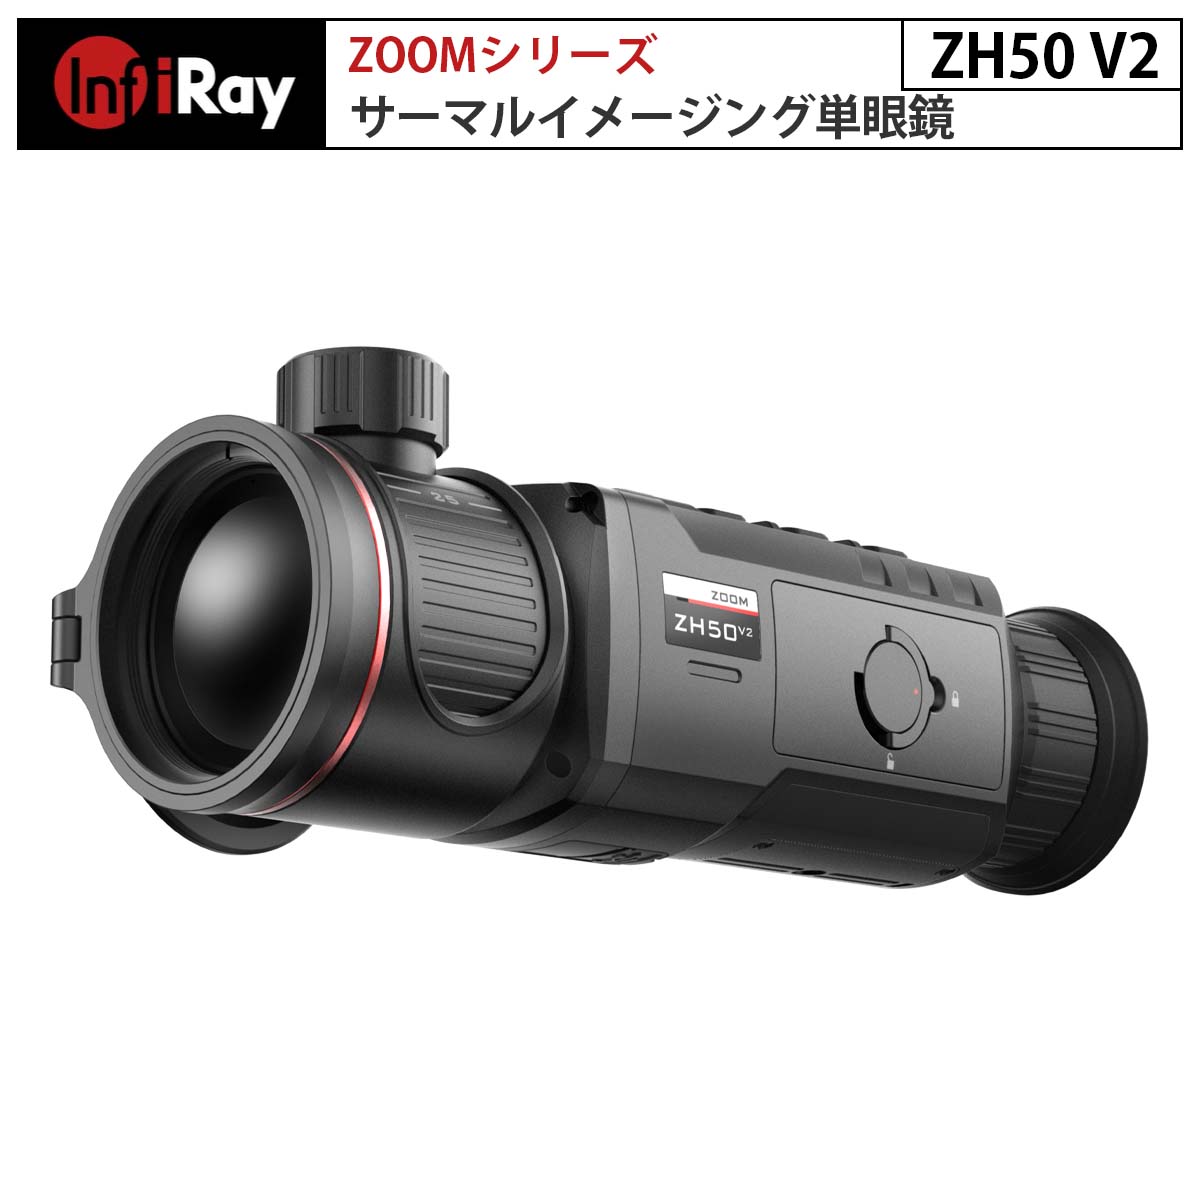 ZoomシリーズZH50 V2は、サーマルイメージング単眼鏡で、熱観察、ホットスポットの追跡、写真やビデオの撮影、Wi-Fi接続などの機能を持つ製品です。デュアル-FOVレンズは、迅速なデュアル視野切り替えを可能にし、ターゲットの探索を効率的にします。また、この熱画像技術は、外部の光源が不要で、強い光の影響を受けないため、夜間や雨、雪、霧、かすみのような悪天候でも、枝や高い草、茂みの後ろに隠れた物体を観察できます。夜間の狩猟、観察、位置情報の特定、捜索、救助作業など、さまざまな活動に広く活用できます。 【Zoomシリーズ ZH50 V2について】 ■リフォーカス不要＆シームレスな切り替え わずか2ステップでデュアル視野をシームレスに切り替えることができます。1 回のフォーカスだけで鮮明な画質を実現できます。フォーカスリングをひねると二重視野をシームレスに切り替えることができ、焦点を合わせ直すことなく鮮明な画質を維持し続けることができます。 焦点距離25mmと広いFOVはターゲットの検索に使用でき、焦点距離50mmの狭いFOVはターゲットの識別に使用できます。 ■NETD &le;25mKの12umセンサー ZH50 V2には、NETD&le;25mKを特徴とする非冷却 vox12um 640×512高解像度センサーが装備されています。強力なセンサーと画像アルゴリズムにより、より優れた画質が提供されます。 ■AMOLED 1440×1080 ディスプレイ ZH50 V2は1440×1080 FHD AMOLEDディスプレイを採用しており、より優れたレイヤーとコントラストを提供し、観察効果がより優れています。 ■4× 基本倍率 高倍率の光学システムを備えた高解像度のAMOLEDディスプレイにより、より鮮明な画質とより優れた 観察体験が提供されます。基本倍率は2倍または4倍を自由に選択できます。4倍の基本倍率により、長距離のターゲットをより鮮明に観察および識別できます。 ■長い検出範囲 高度なイメージセンサーとレンズにより、1.7mのターゲットの検出範囲は最大2600mに達します。 ■10時間×2個のバッテリー ZOOMシリーズは、低消費電力コンポーネントを使用し、消費電力を低減しています。交換可能な4400mAhの大容量リチウム電池パックの電池寿命は最大10時間。 追加の電池パック1コが付属し、稼働時間は最大で20時間となり、長期間の屋外使用でも安心です。 ■写真/ビデオ/マイク/32GB ZH50 V2の内蔵マイクは同期音声入力をサポートしています。32GBのメモリを搭載しており、ビデオや写真の保存をサポートします。内蔵WiFiモジュールはAPP接続とメディア送信をサポートします。 ■ウルトラクリアモード 濃霧や雨の中でも、内蔵のウルトラクリアモードにより、より詳細な視野と強化された物体識別機能を通じて鮮明な画像を表示します。 ■5つのカラーパレット さまざまなハンティング環境やユーザーの趣向に合わせ、「ホワイトホット」「ブラックホット」「レッドホット」「カラー」「ホットターゲットハイライト」の5種のカラーパレットを用意しています。異なるカラーパレット間の切り替えは迅速かつ簡単に行えます。 モデル ZH50 V2 検出器仕様 タイプ 非冷却 Vox 検出器解像度(ピクセル) 640×512 ピクセルサイズ 12um NETD(ノイズ等価温度差)(mK) &le;25 フレームレート 50Hz 光学仕様 対物レンズ 25mm/50mm FOV 17.5°×13.1° / 8.8°×6.6° 直線視野（H×V） 31×23 / 15×12 拡大倍率 2～8× / 4～16× 検知範囲（対象サイズ：1.7m×0.5m、P(n)=99%） 1300m / 2600m アイレリーフ 20mm 射出瞳径 5.5mm 視度調整（D） -5～ +5 ディスプレイ タイプ FHD AMOLED 解像度(ピクセル) 1440×1080 電源 バッテリー リチウムイオン電池パック IBP-1/4400mAh 最大動作時間(22℃) 10時間 外部電圧 5V (Type-C) 物理的仕様 Wi-Fi/APP サポート(InfiRay outdoor) 写真/ビデオレコーダー サポート マイク サポート 記憶容量 32GB IP等級 IP67 作動温度 -20～+50℃ 本体重量 &le;710g サイズ 220×59×75mm 1年無償保証永久修理保証初期不良の即交換対応万が一の故障でもご安心ください。サーマルイメージング単眼鏡 Zoomシリーズ ZH50 V2（iRay）｜デュアルFOV リフォーカス不要 シームレスな切り替え 高解像度ディスプレイ 4×基本倍率 32GBメモリ搭載 ウルトラクリアモード 5つのカラーパレット 夜間 アニマルウォッチ 観察 捜索 救助【メーカー直輸入】